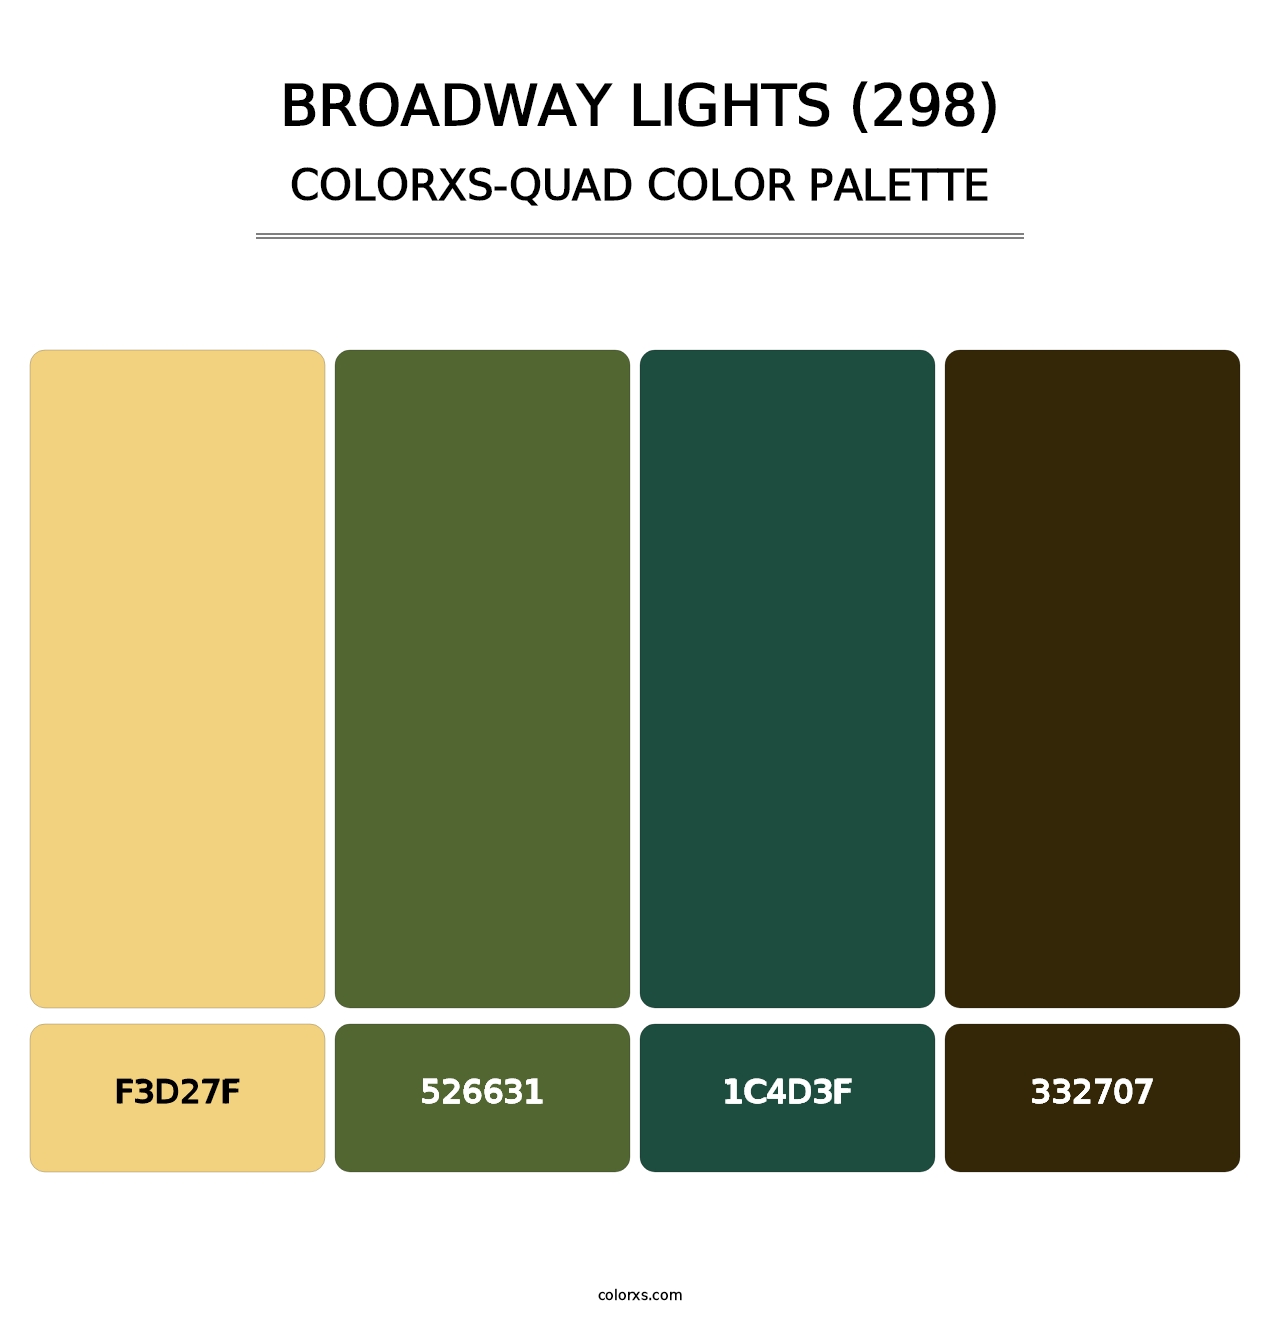 Broadway Lights (298) - Colorxs Quad Palette